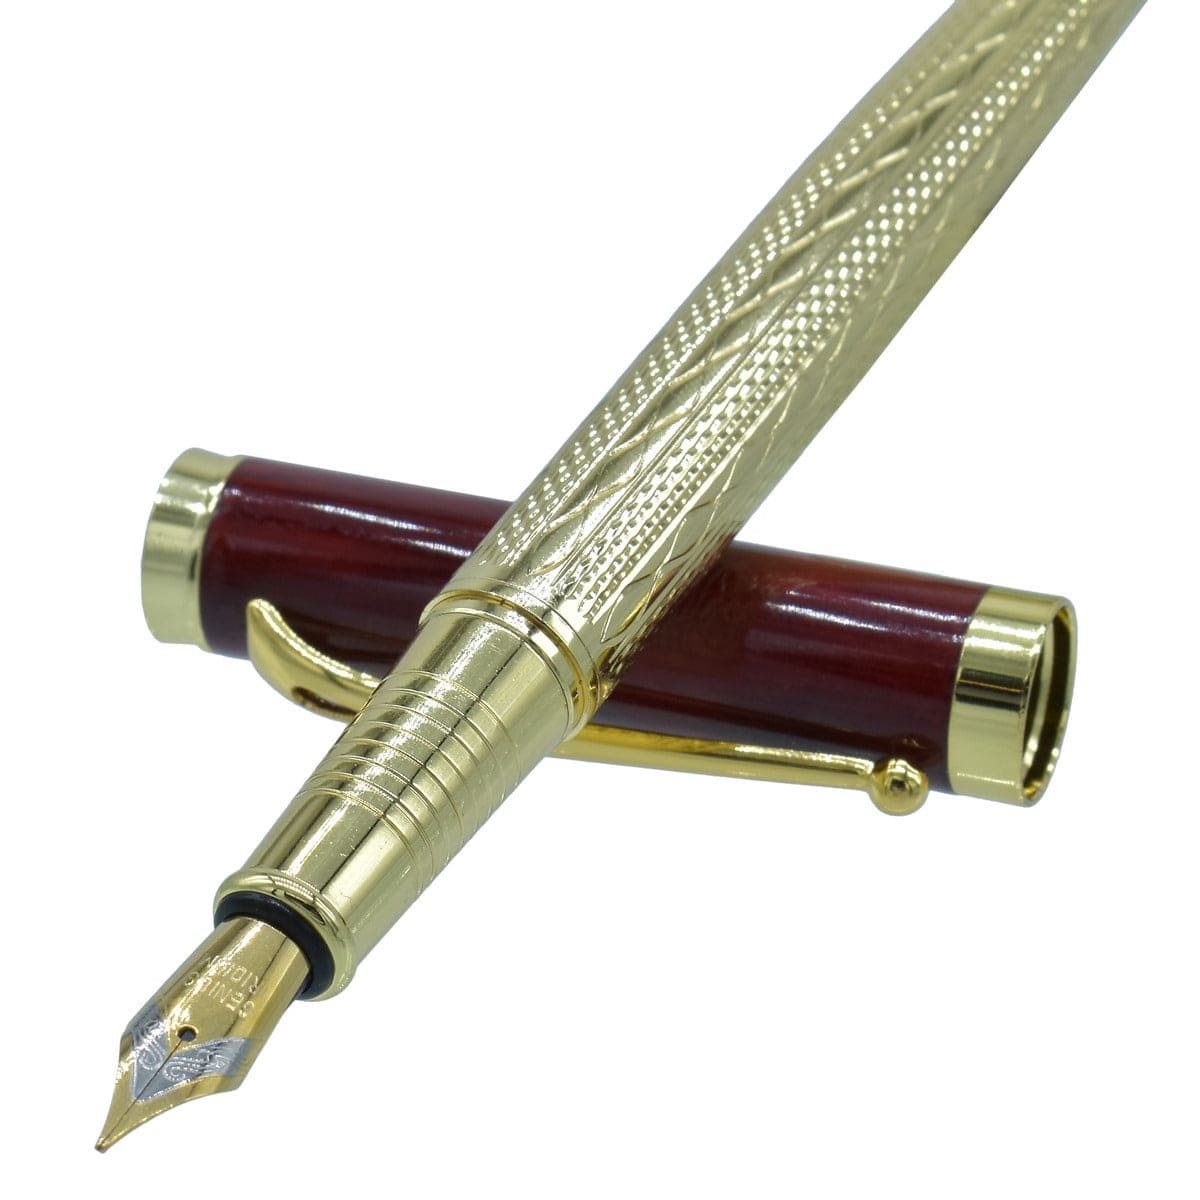 jags-mumbai Fountain pens Fountain pen half gold and red colour golden clip